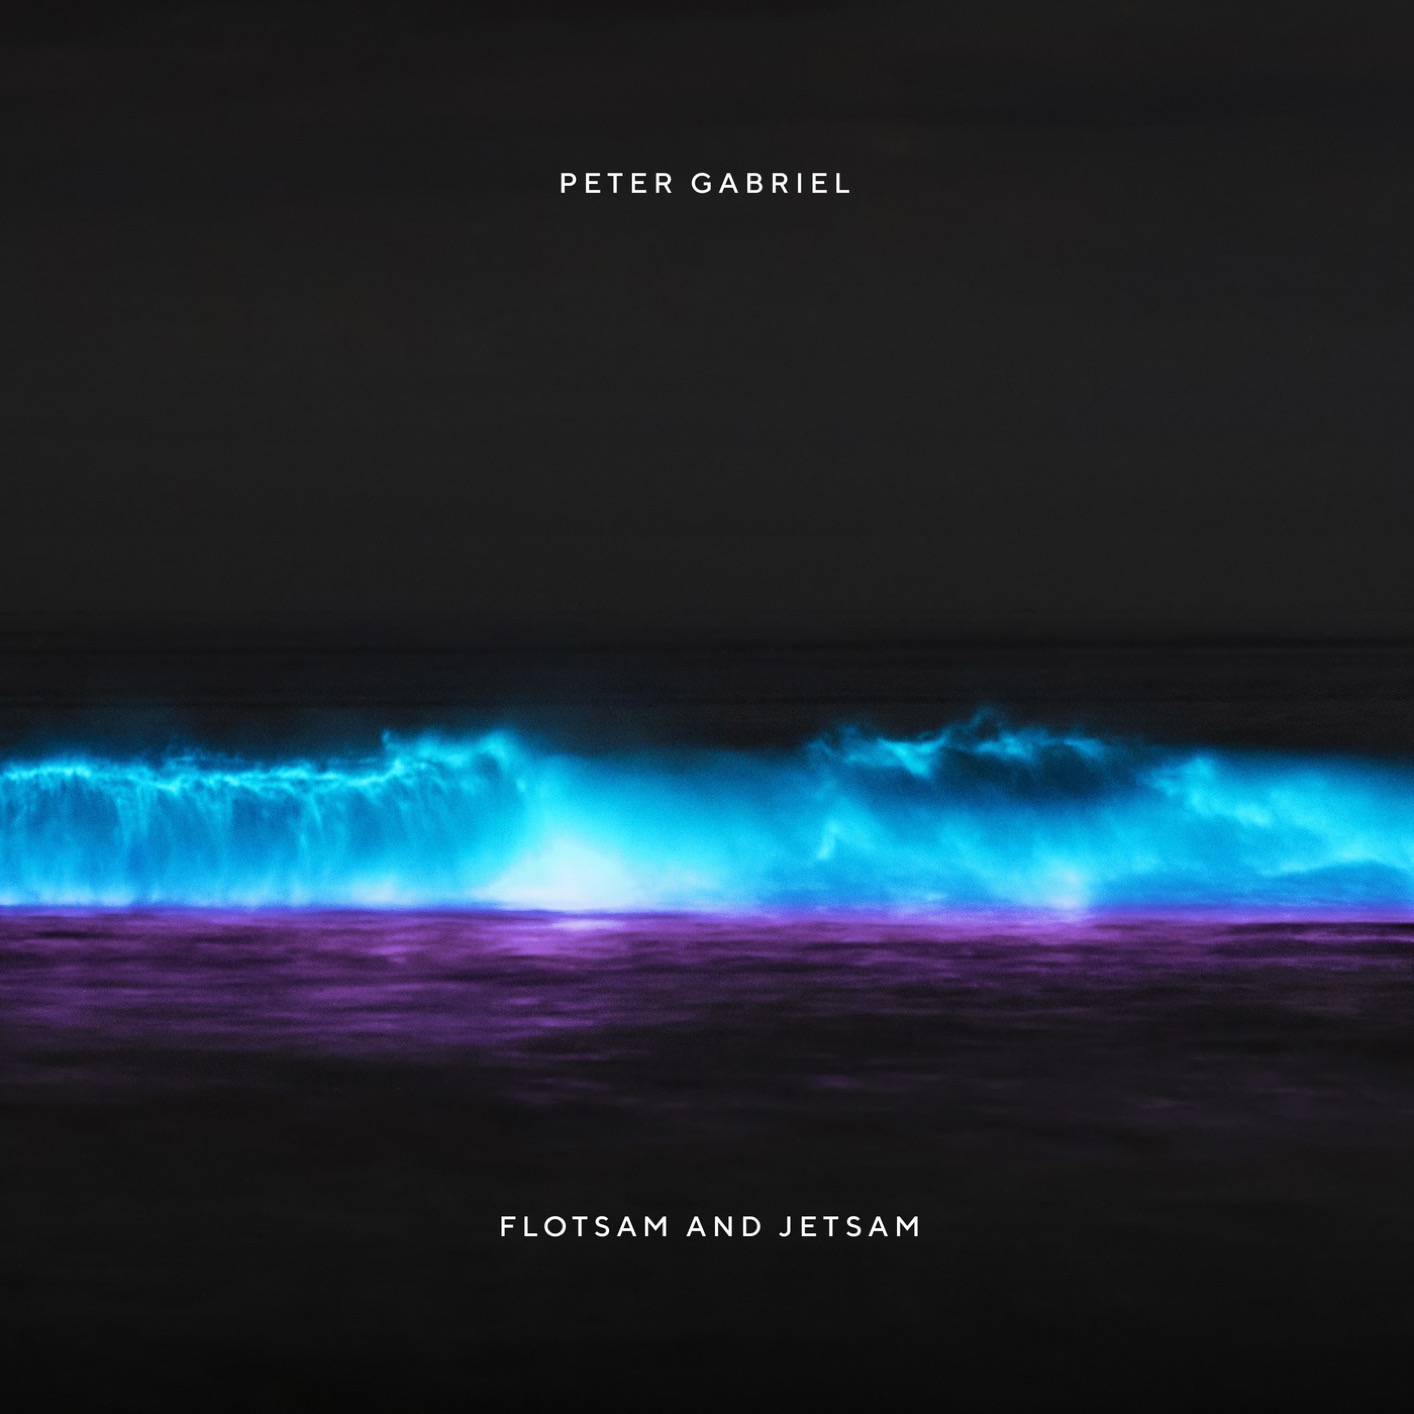 Peter Gabriel – Flotsam And Jetsam (Remastered) (2019) [FLAC 24bit/48kHz]